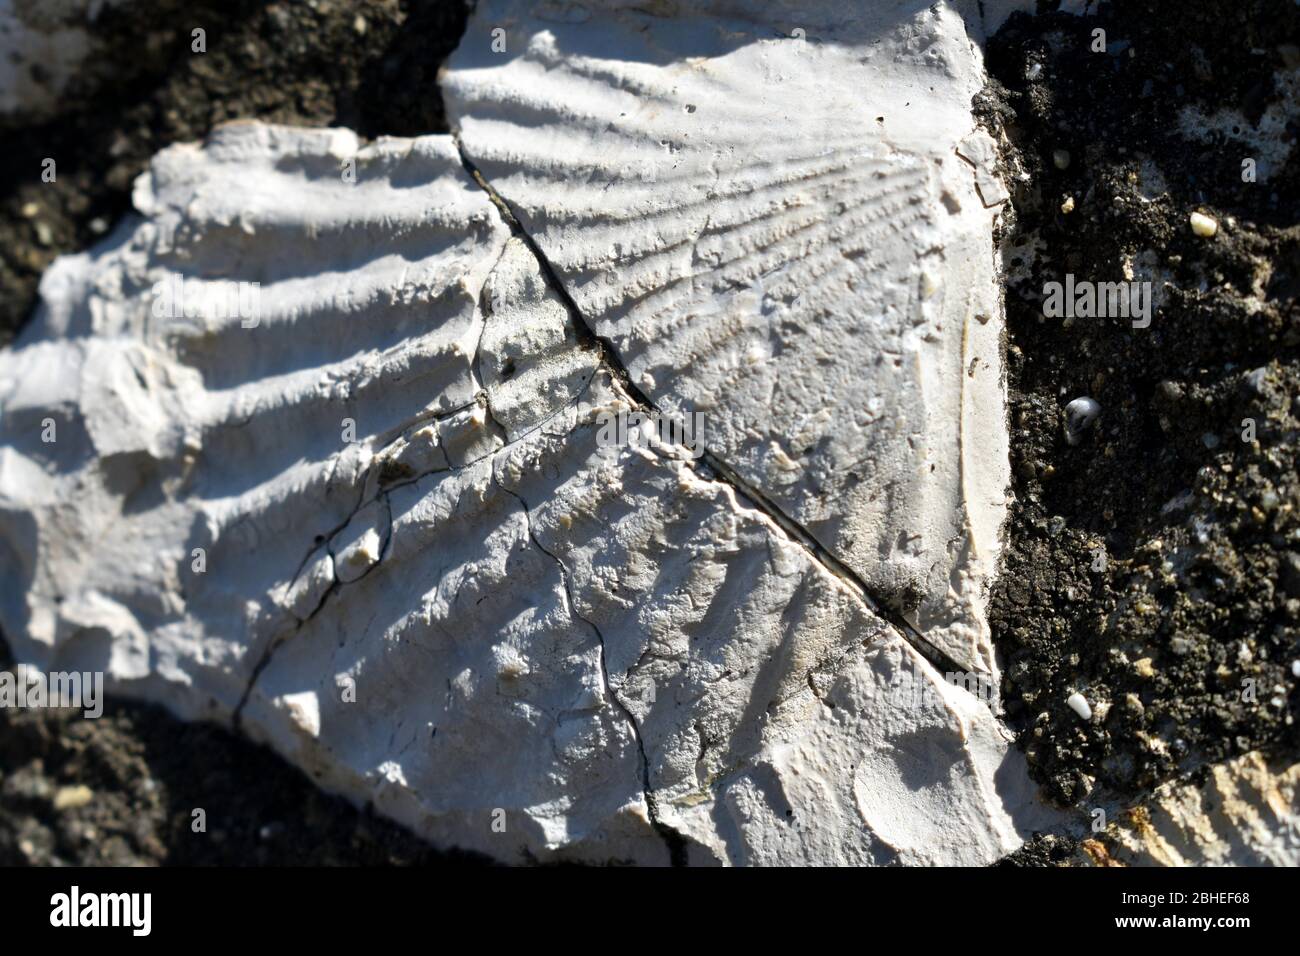 Ammonites fosilizados del período Cretácico. Foto de stock